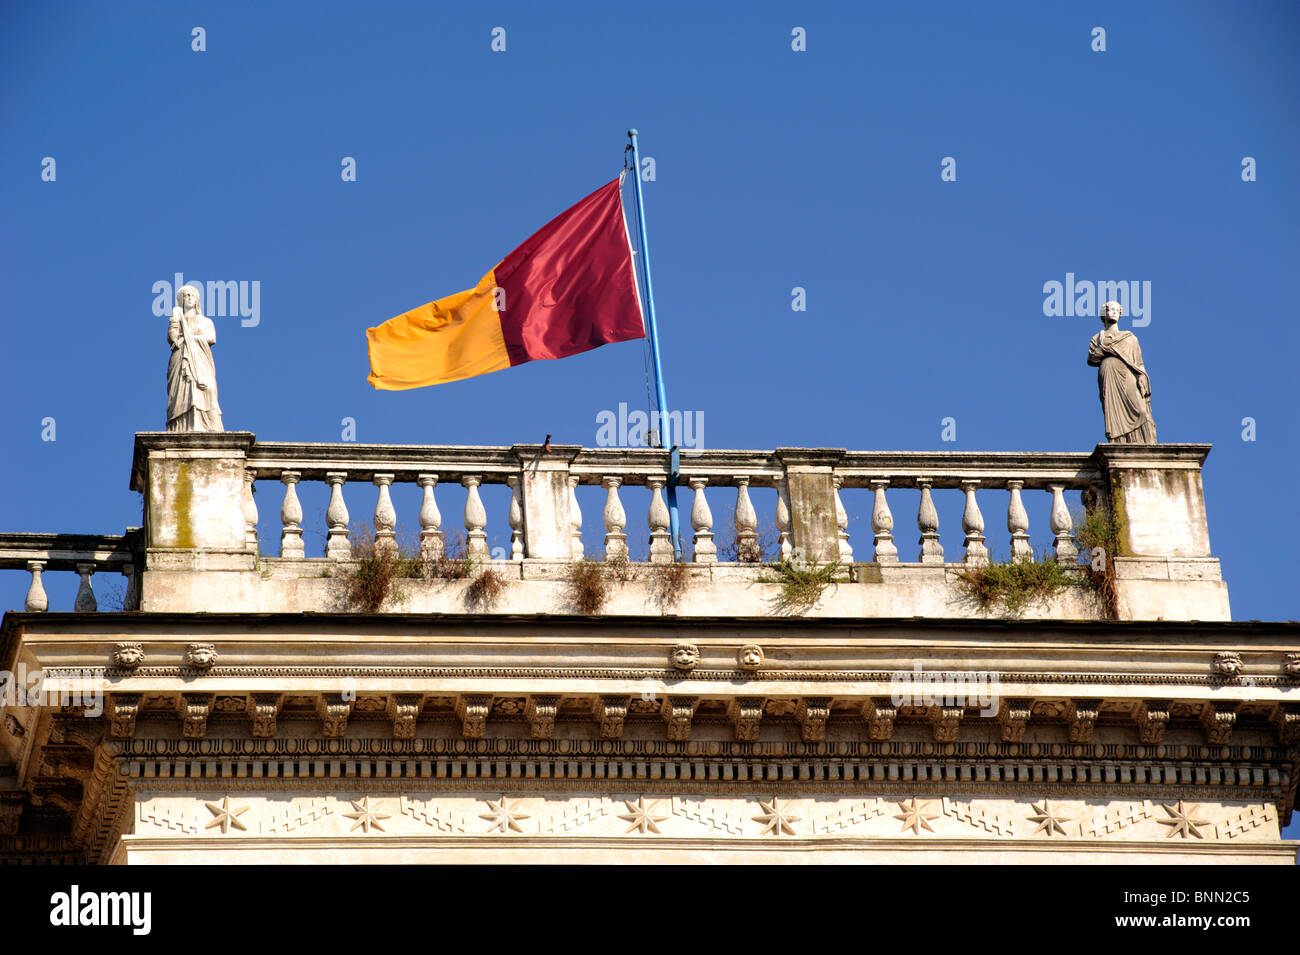 Italie, Rome, Campidoglio, drapeau de la ville de Rome Banque D'Images